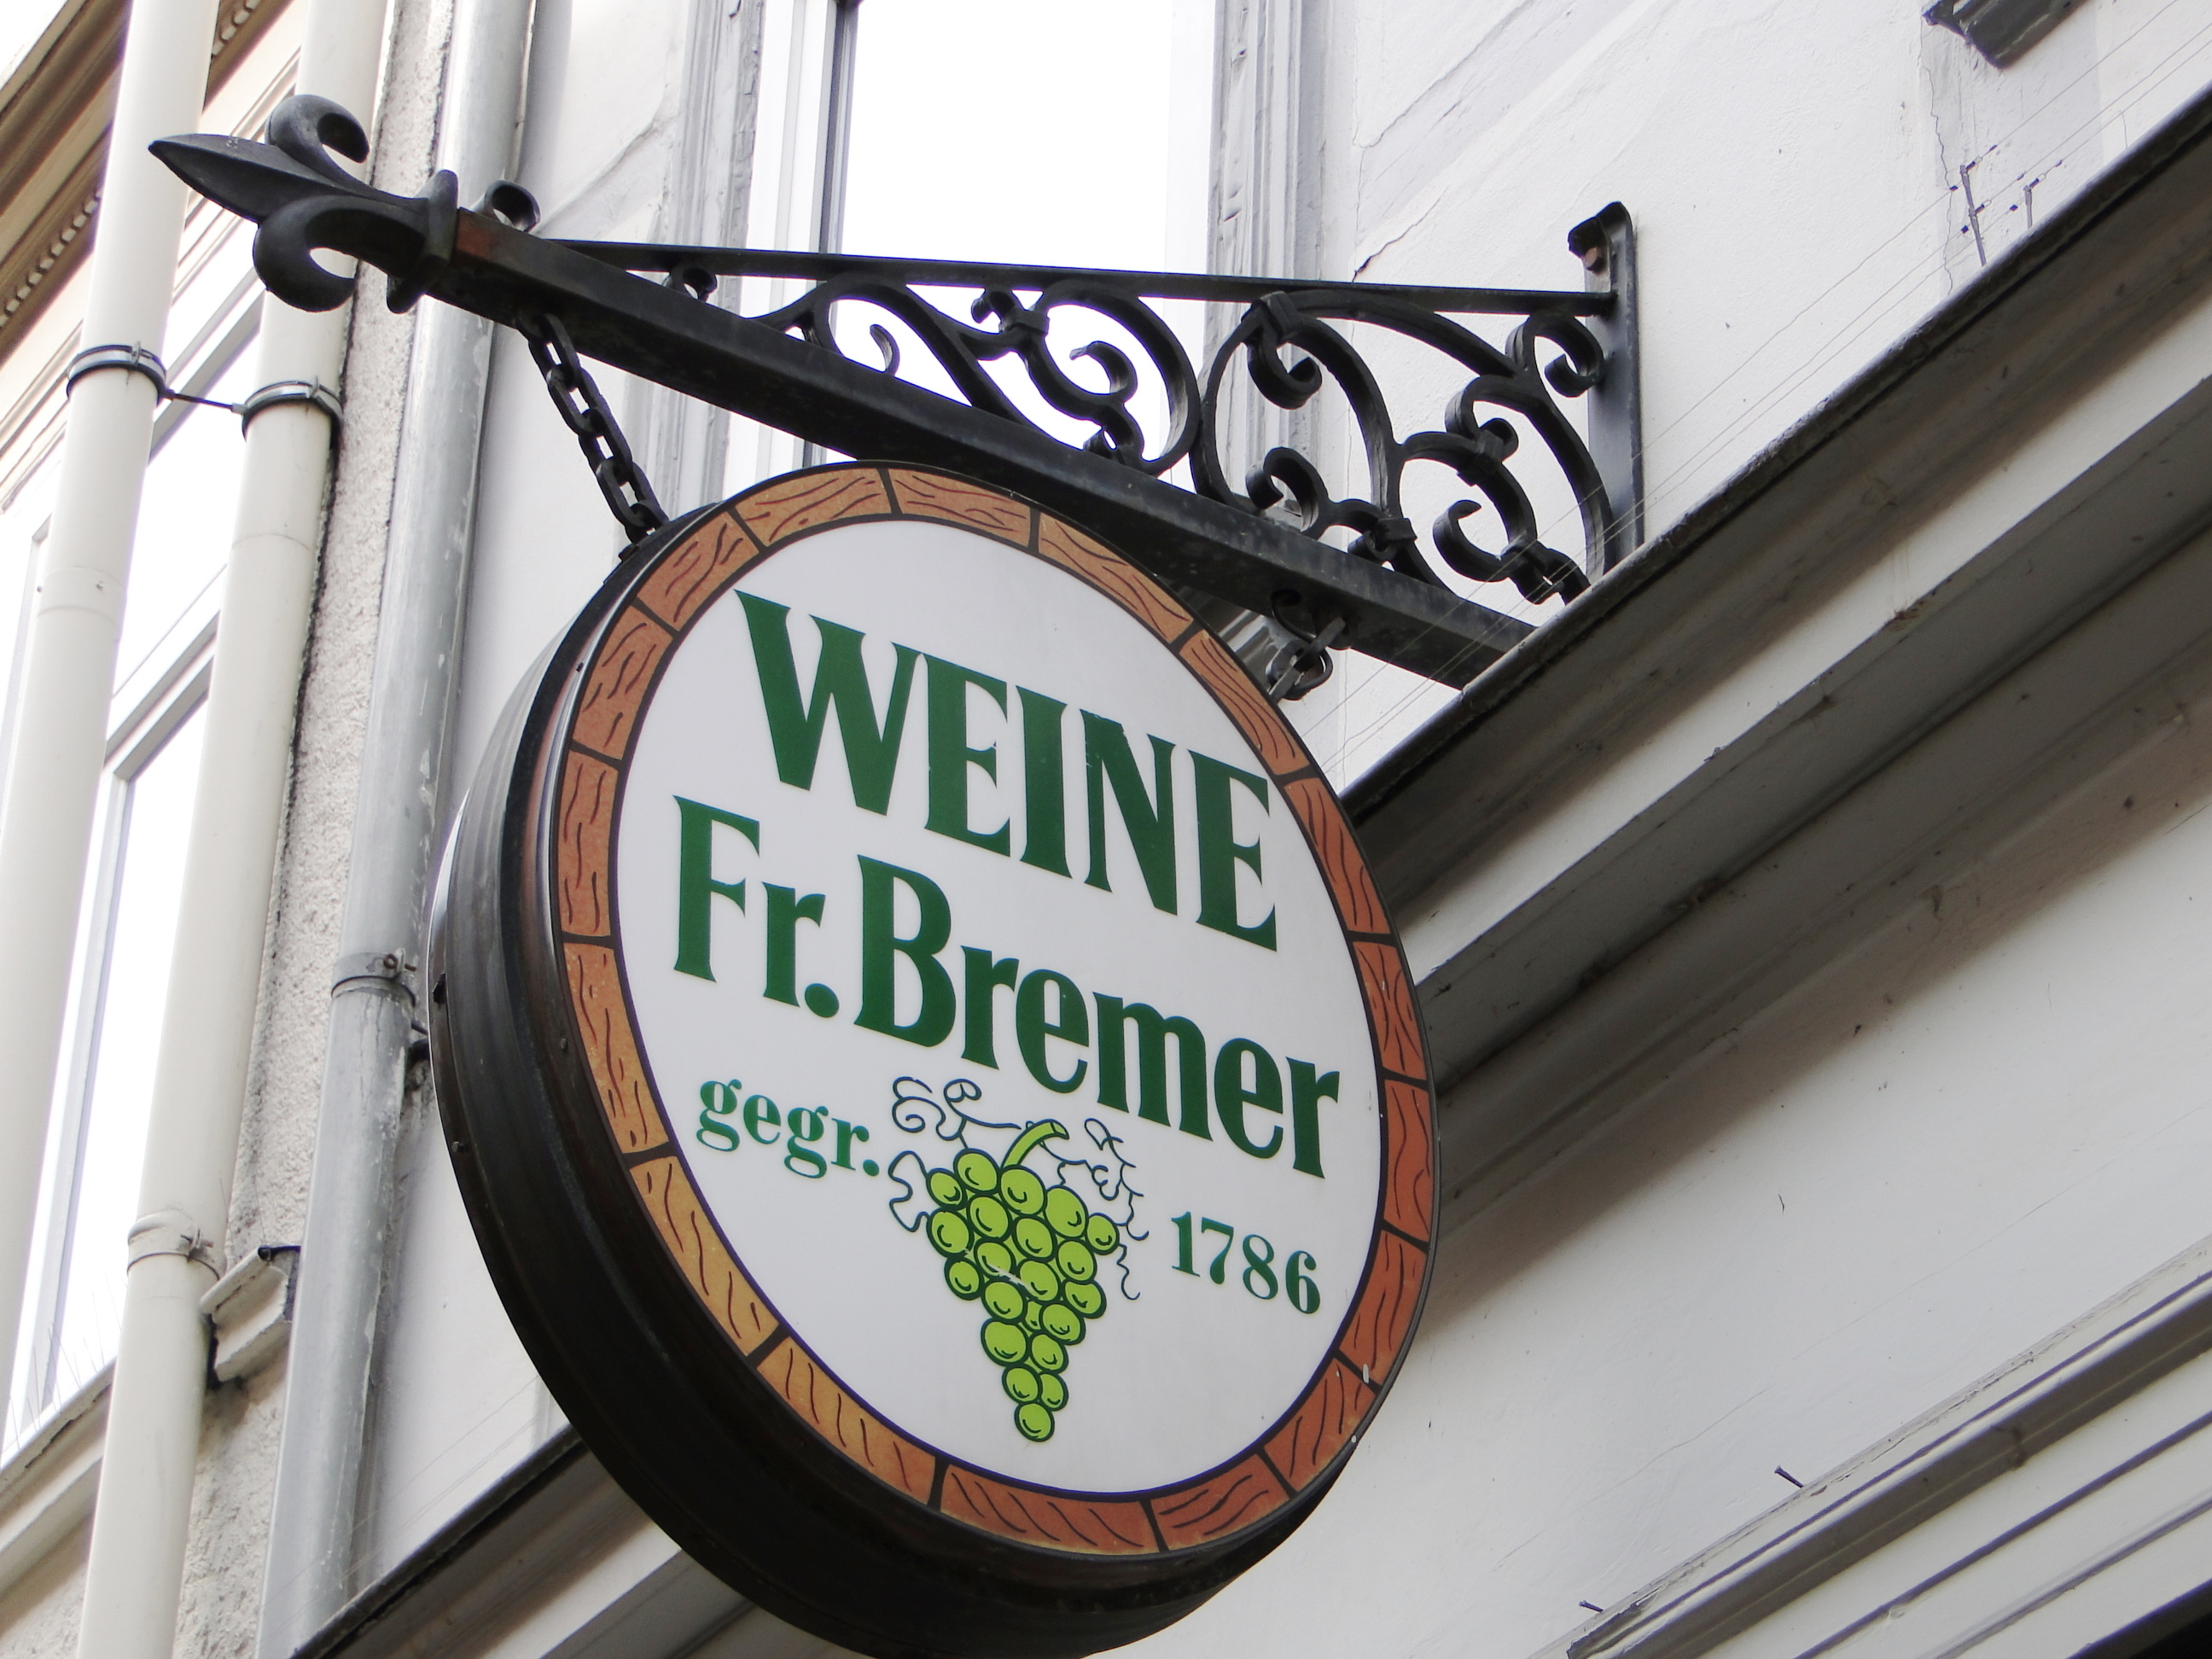 Türschild der Weinhandlung Bremer (alteingesessenes Göttinger Geschäft) in der Barfüßer Str. 10